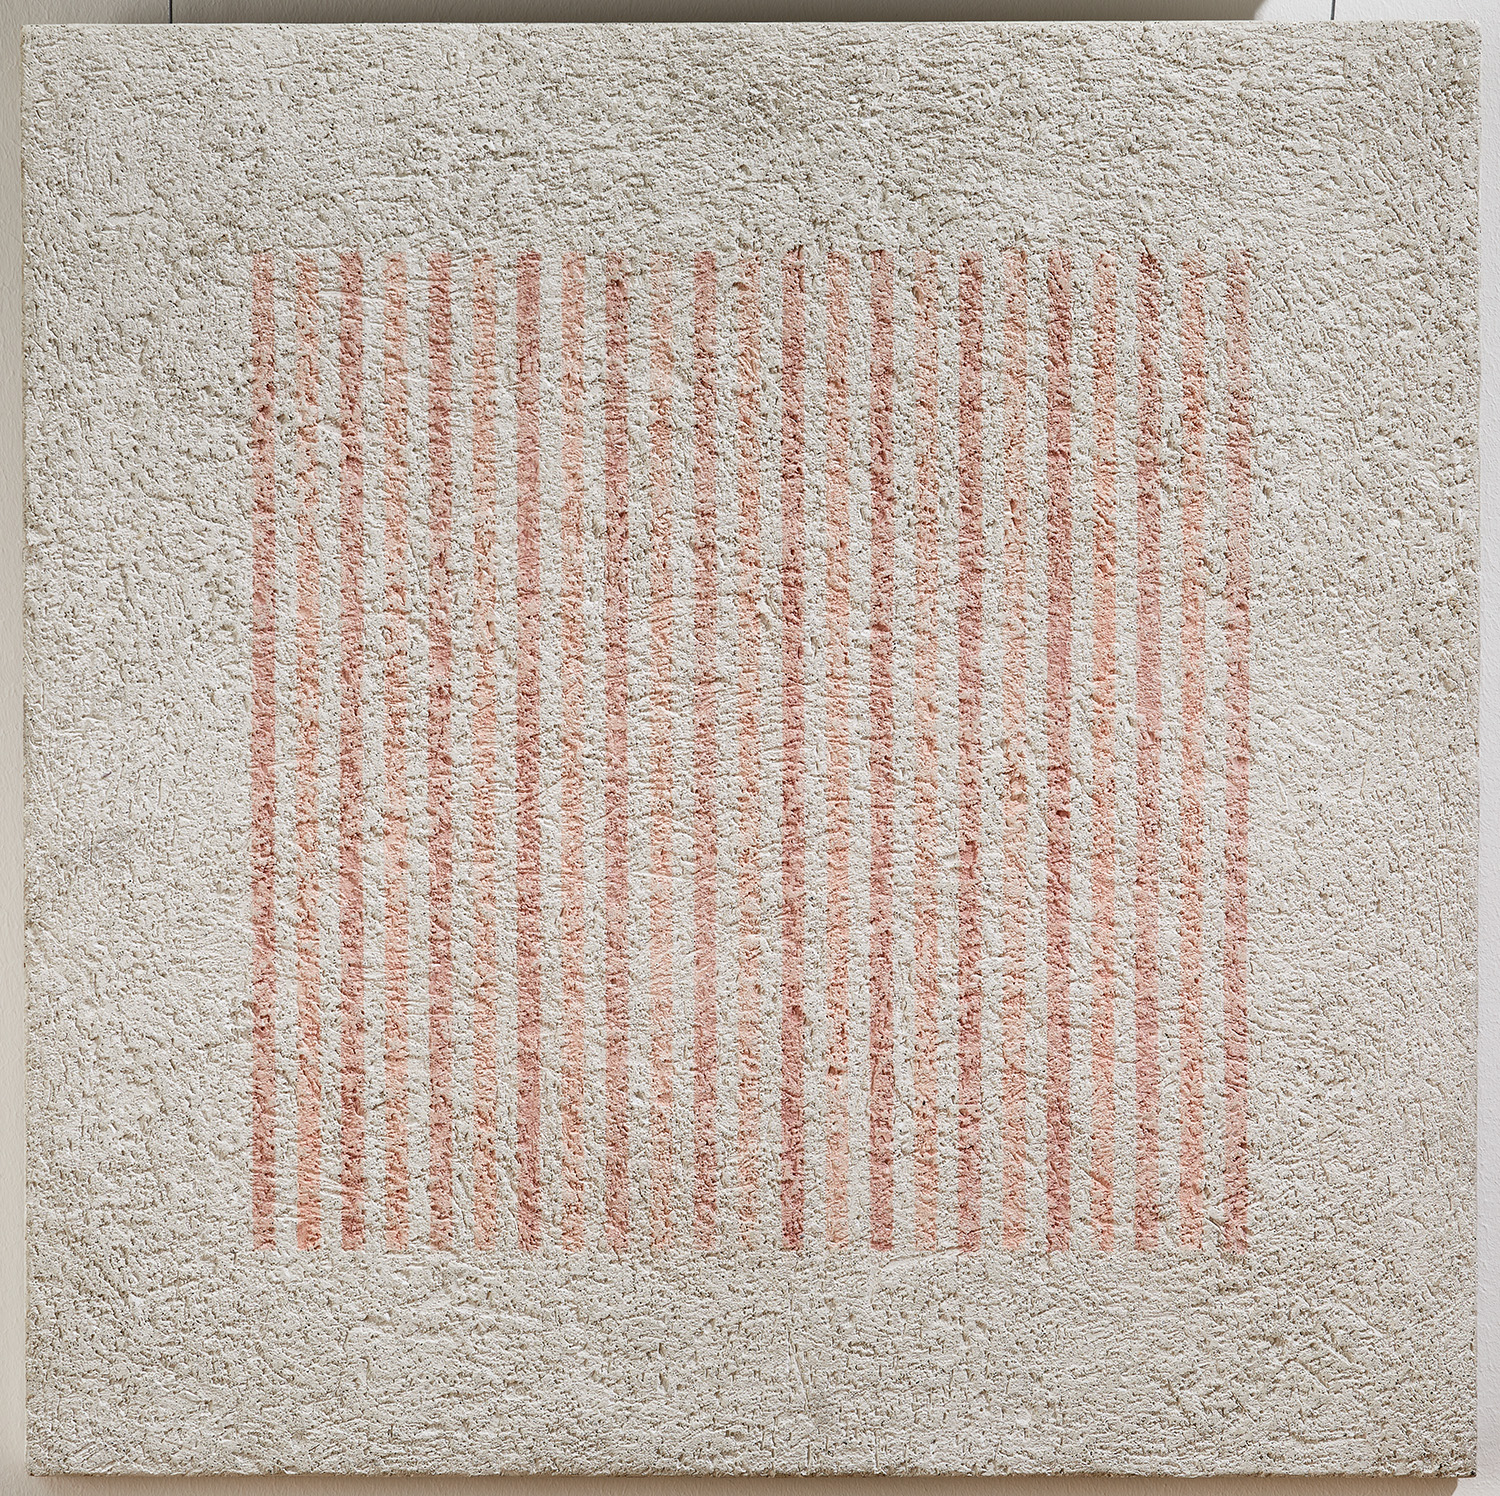 Grammature di colore di Elio Marchegiani - Musei Macerata